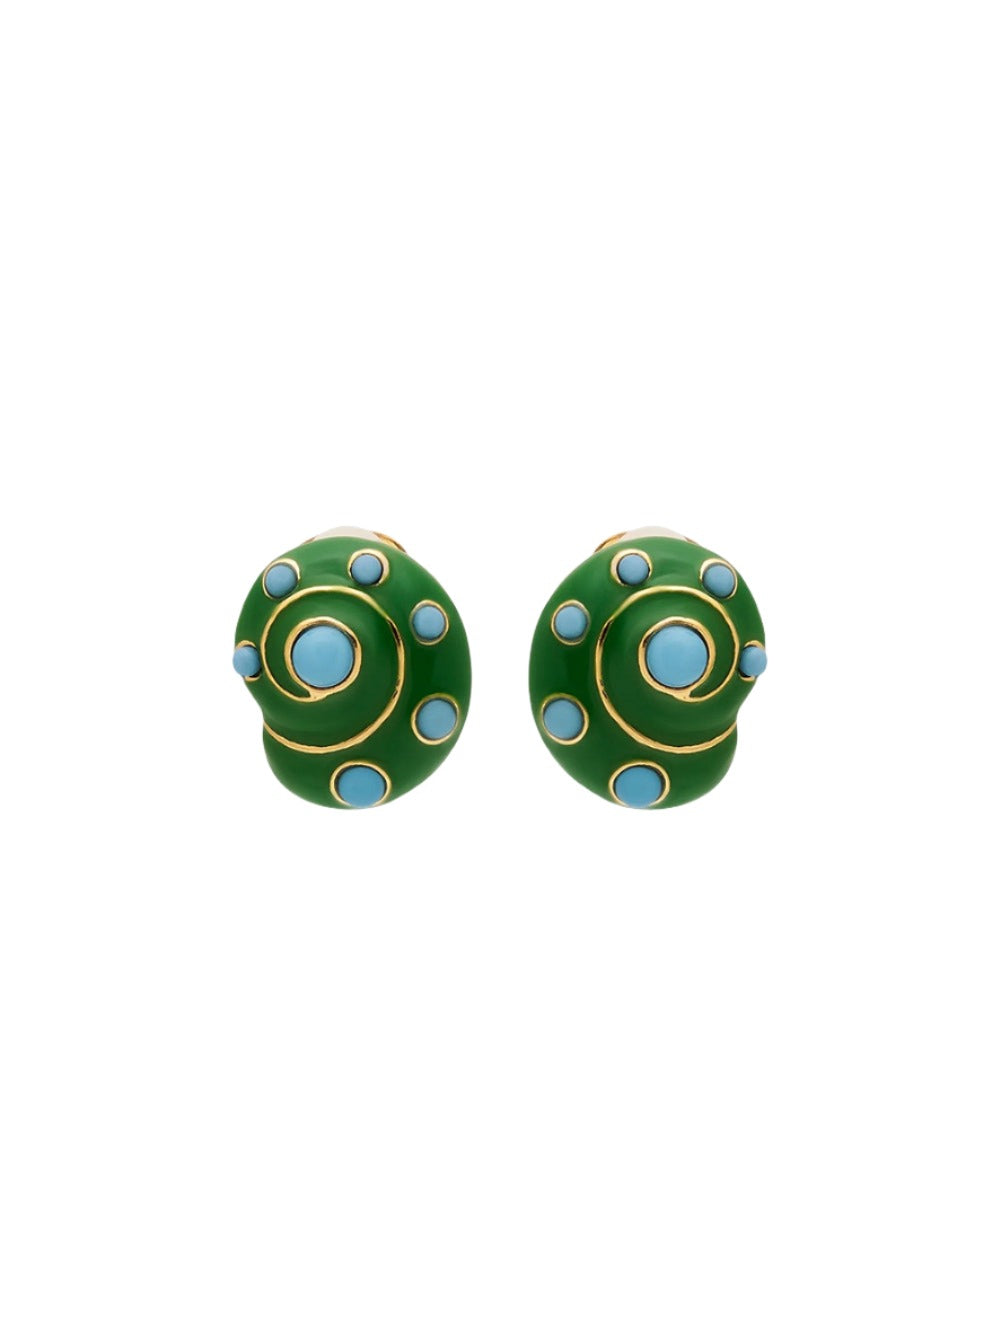 Kenneth Jay Lane Enamel Dots Snail Clip Earrings in Gold/Jade/Turquoise